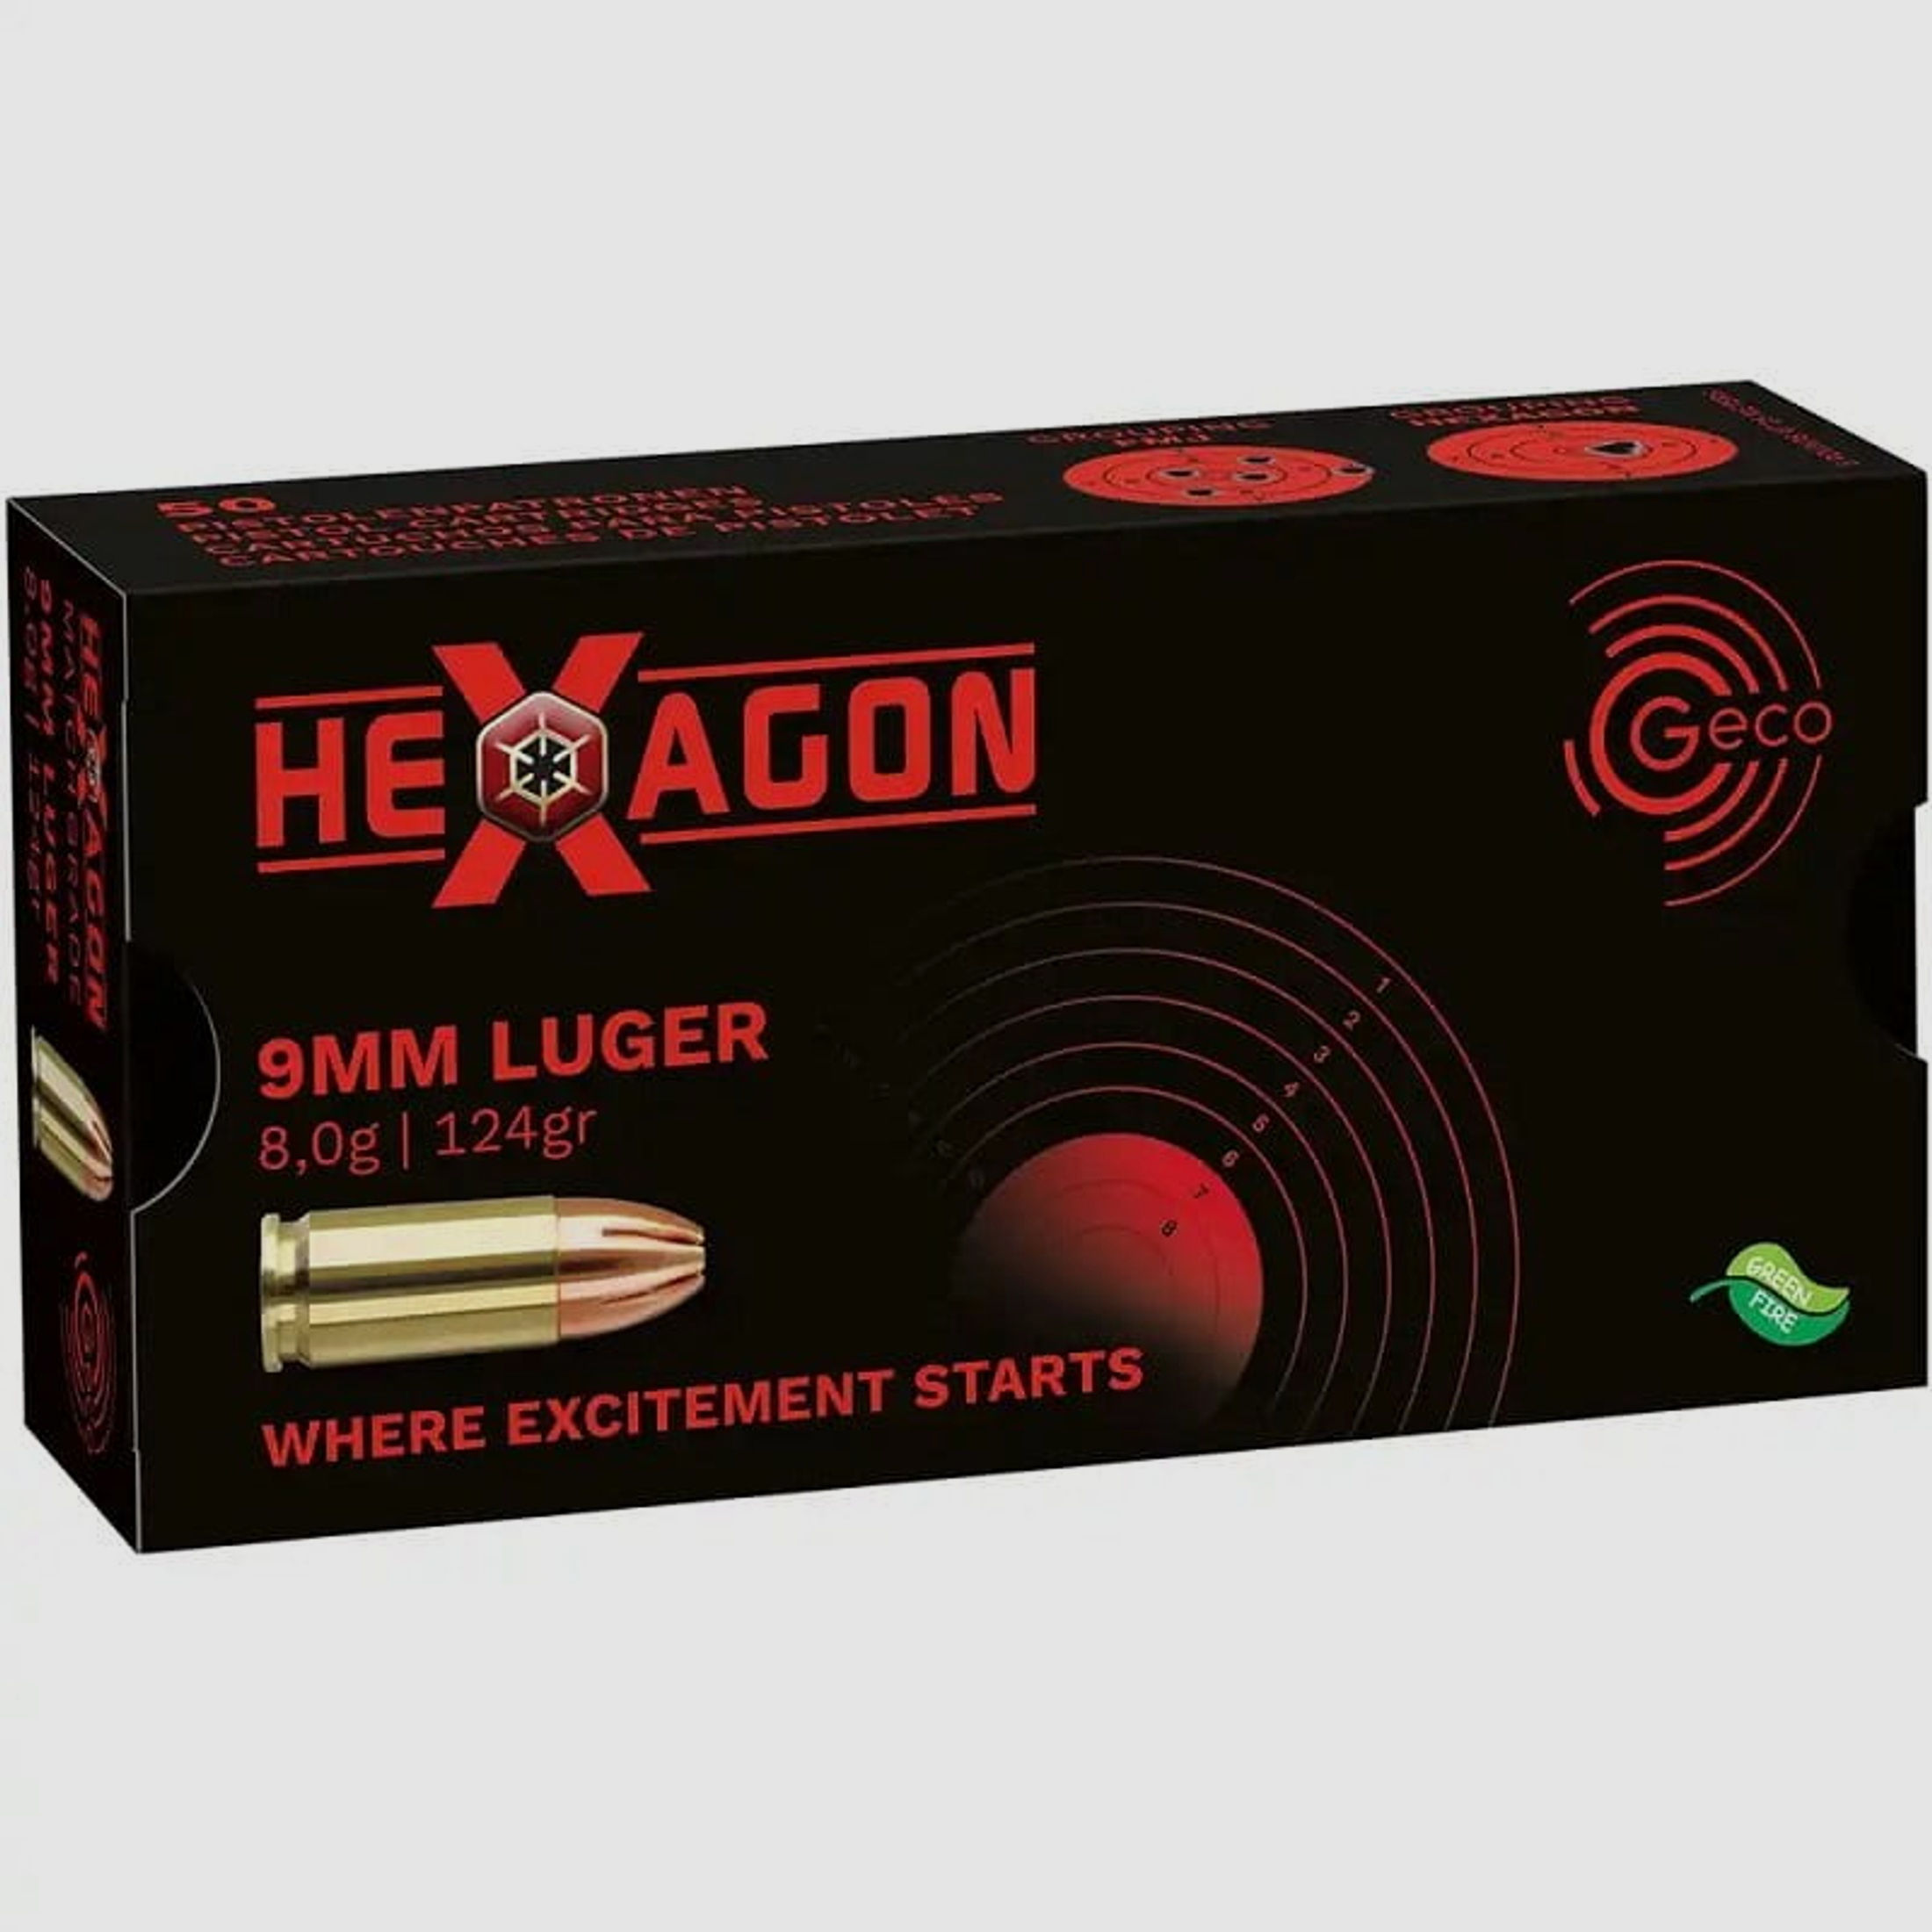 Geco 9mm Luger Hexagon 124gr.